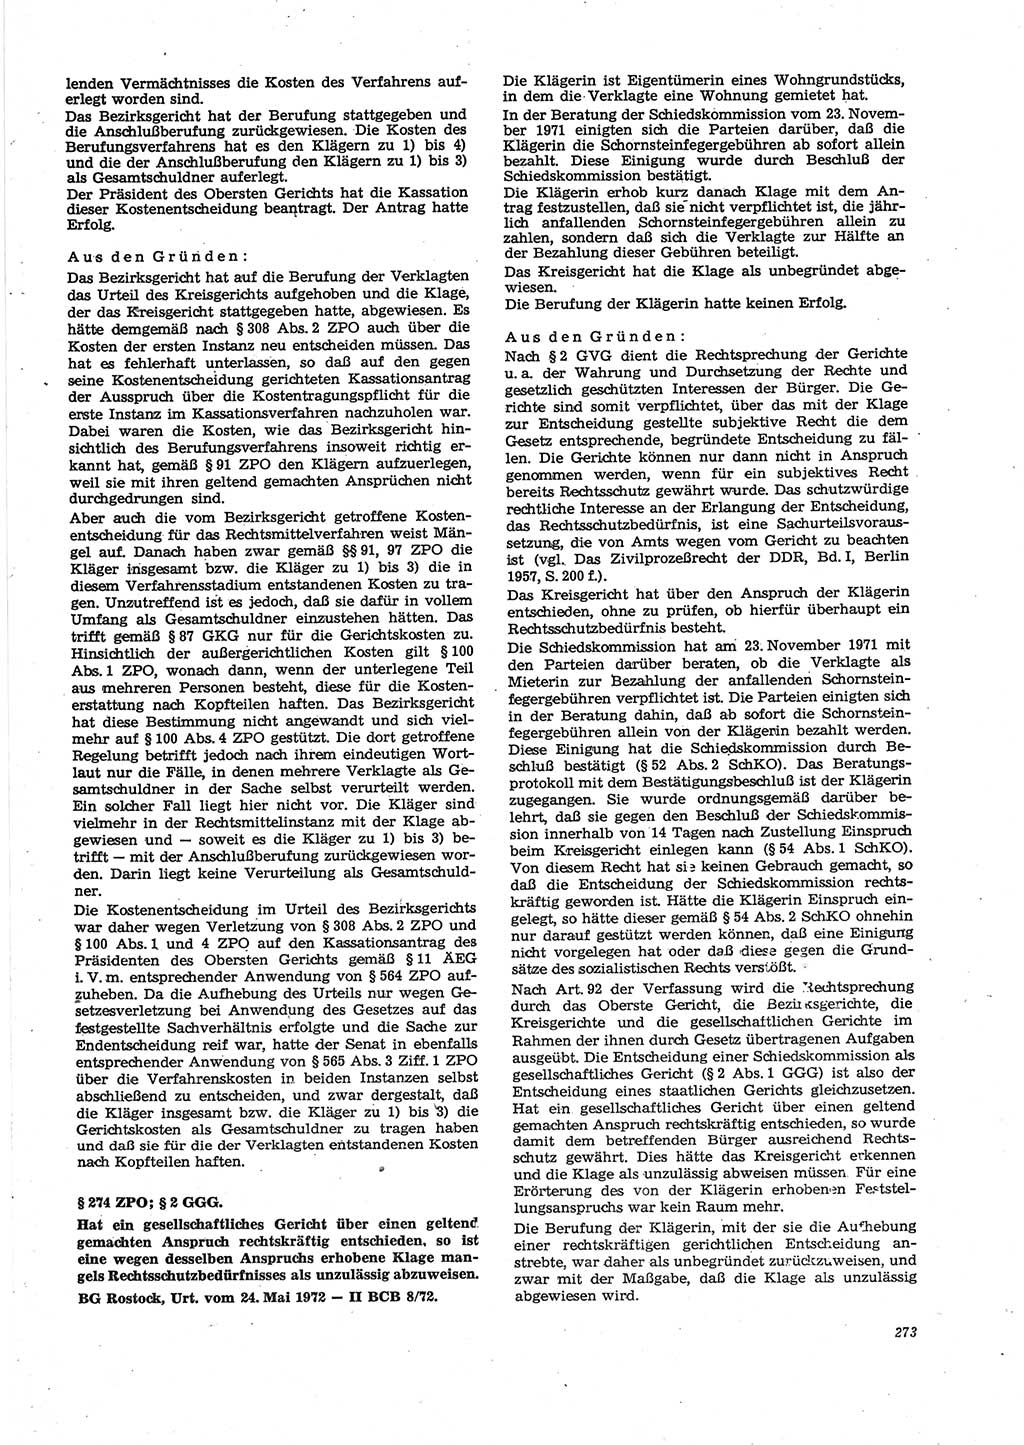 Neue Justiz (NJ), Zeitschrift für Recht und Rechtswissenschaft [Deutsche Demokratische Republik (DDR)], 27. Jahrgang 1973, Seite 273 (NJ DDR 1973, S. 273)